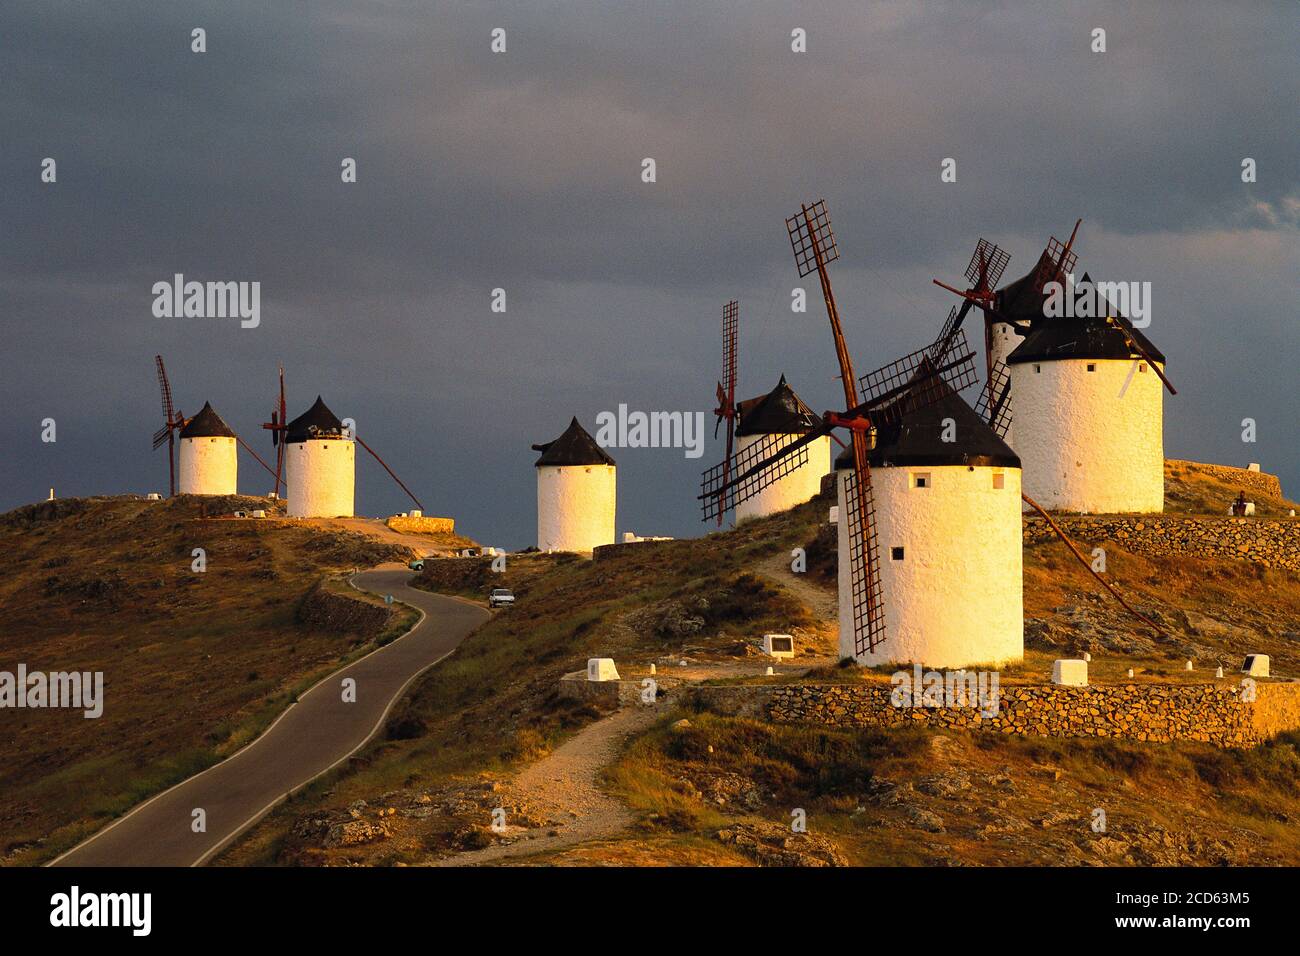 Anciens moulins à vent traditionnels sur les collines, Consuegra, Castilla la Mancha, Espagne Banque D'Images